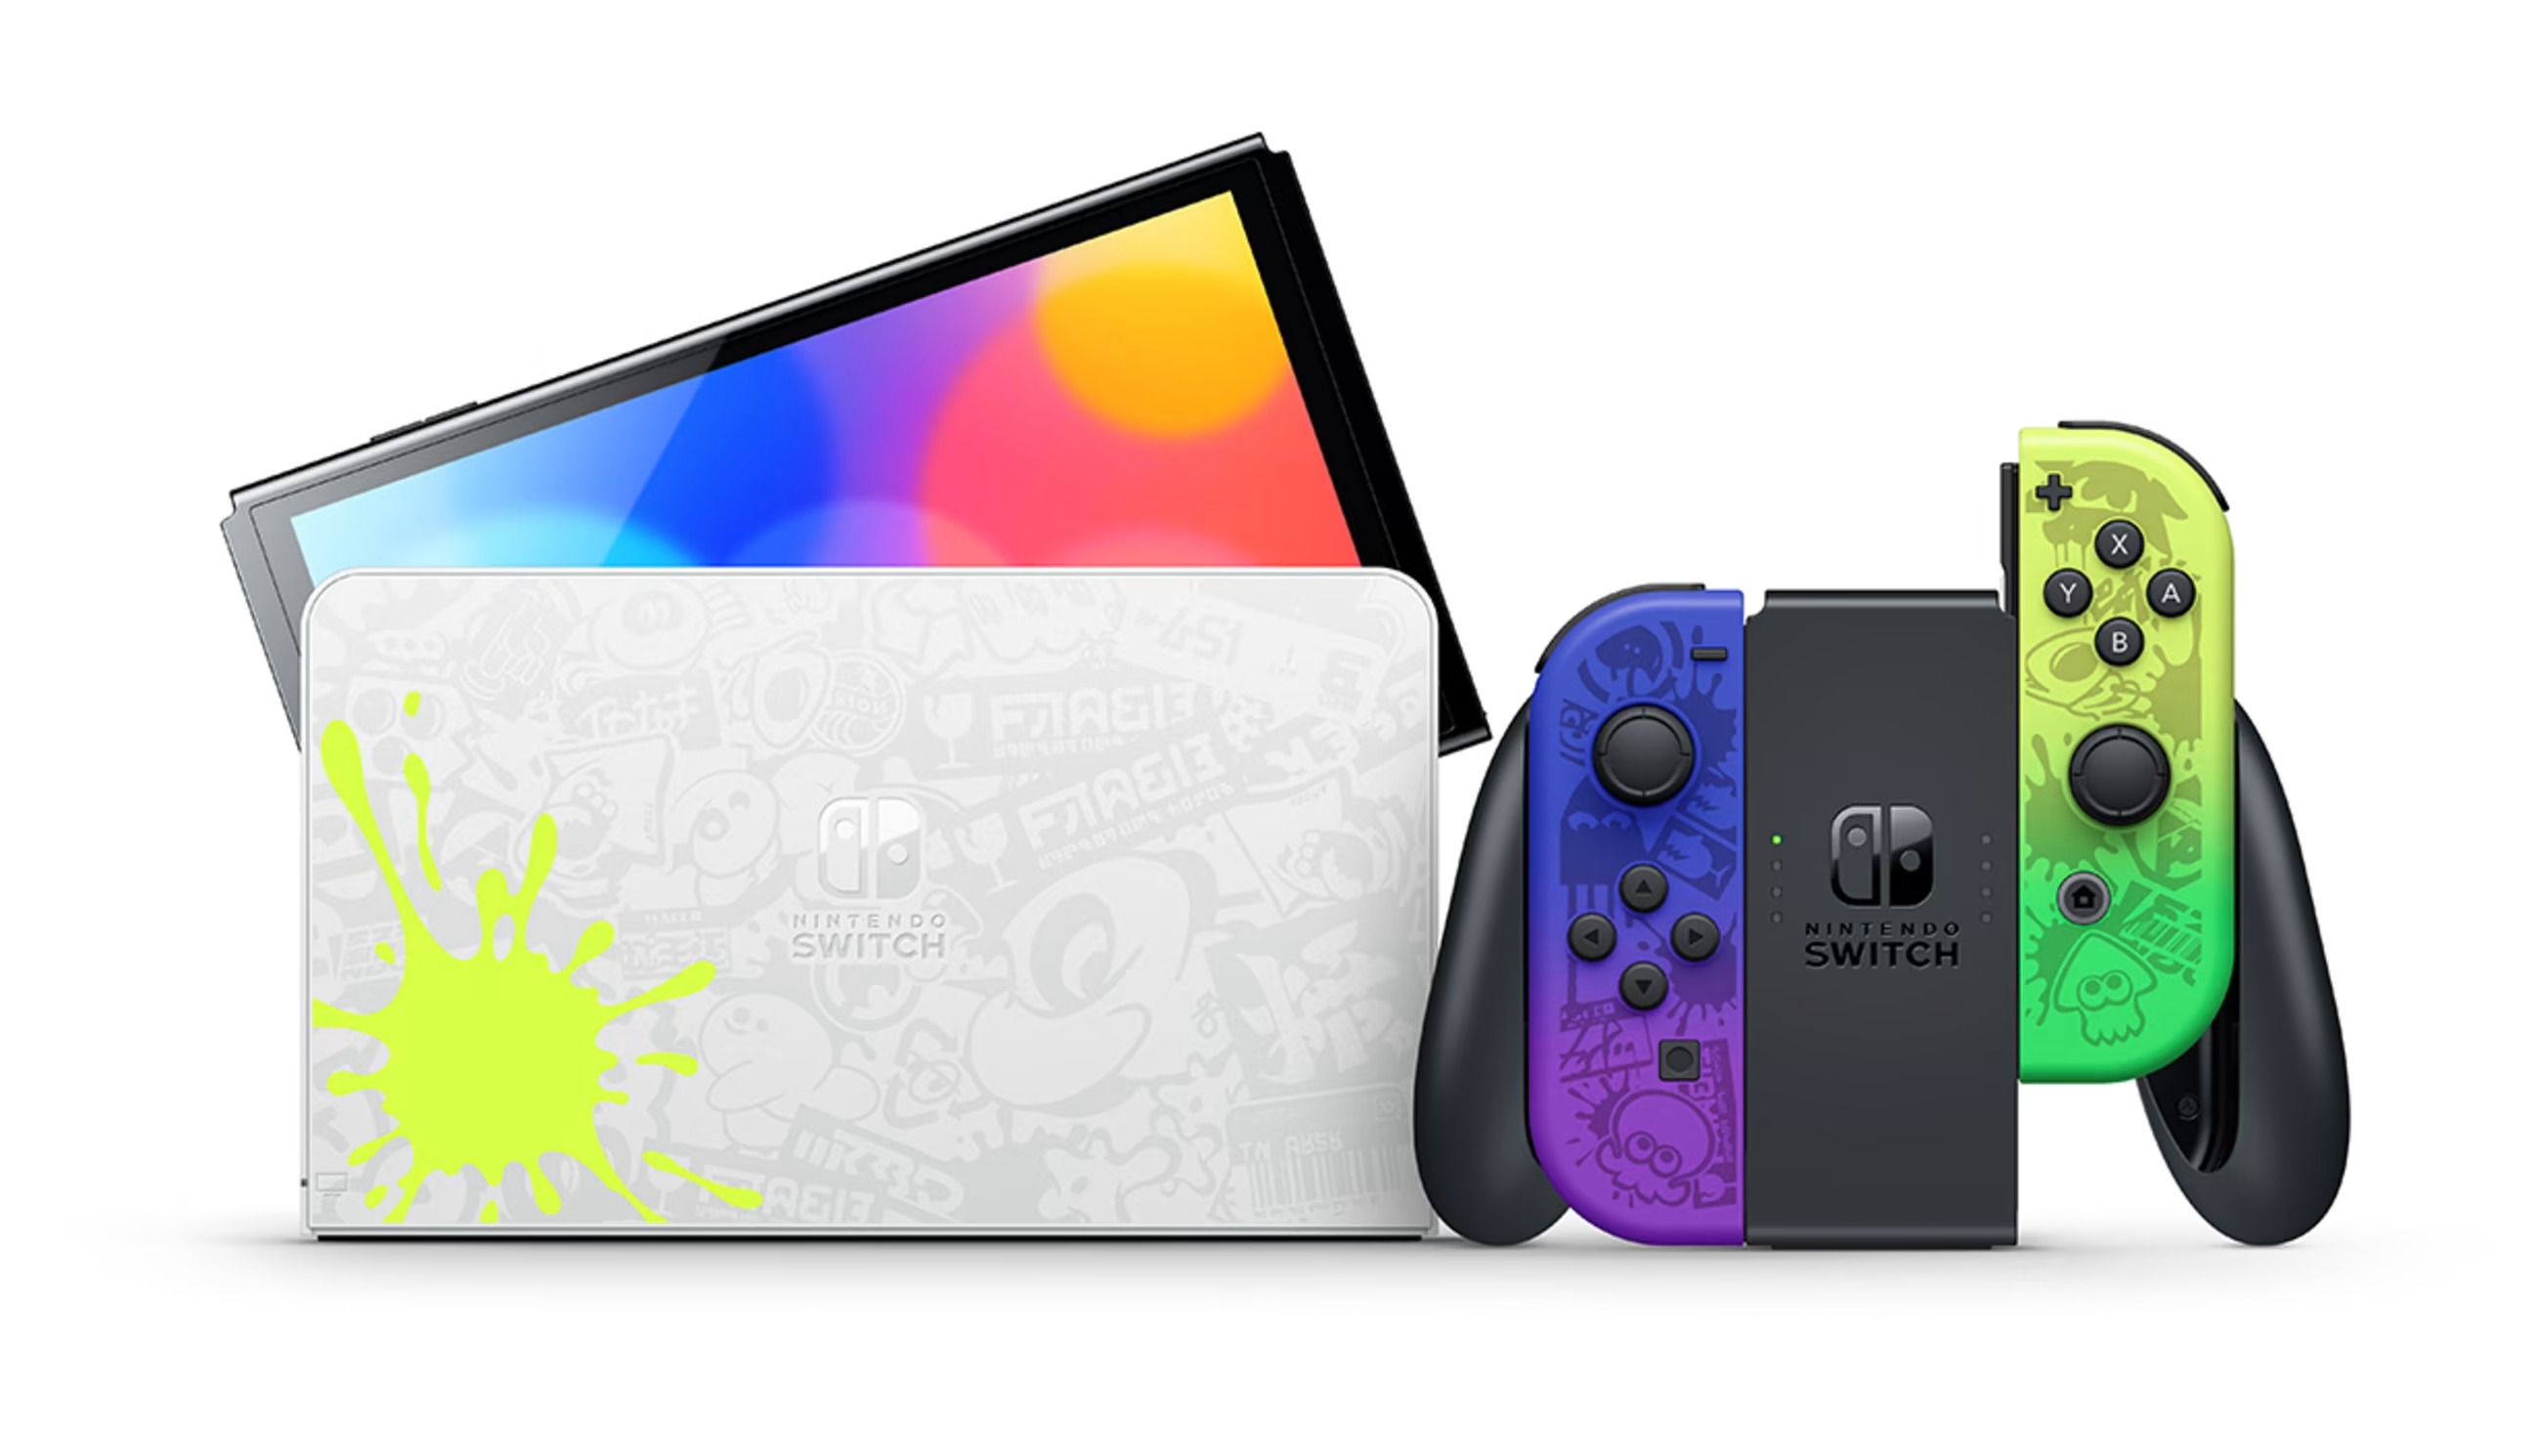 Игровая консоль Nintendo Switch OLED Splatoon 3 Edition